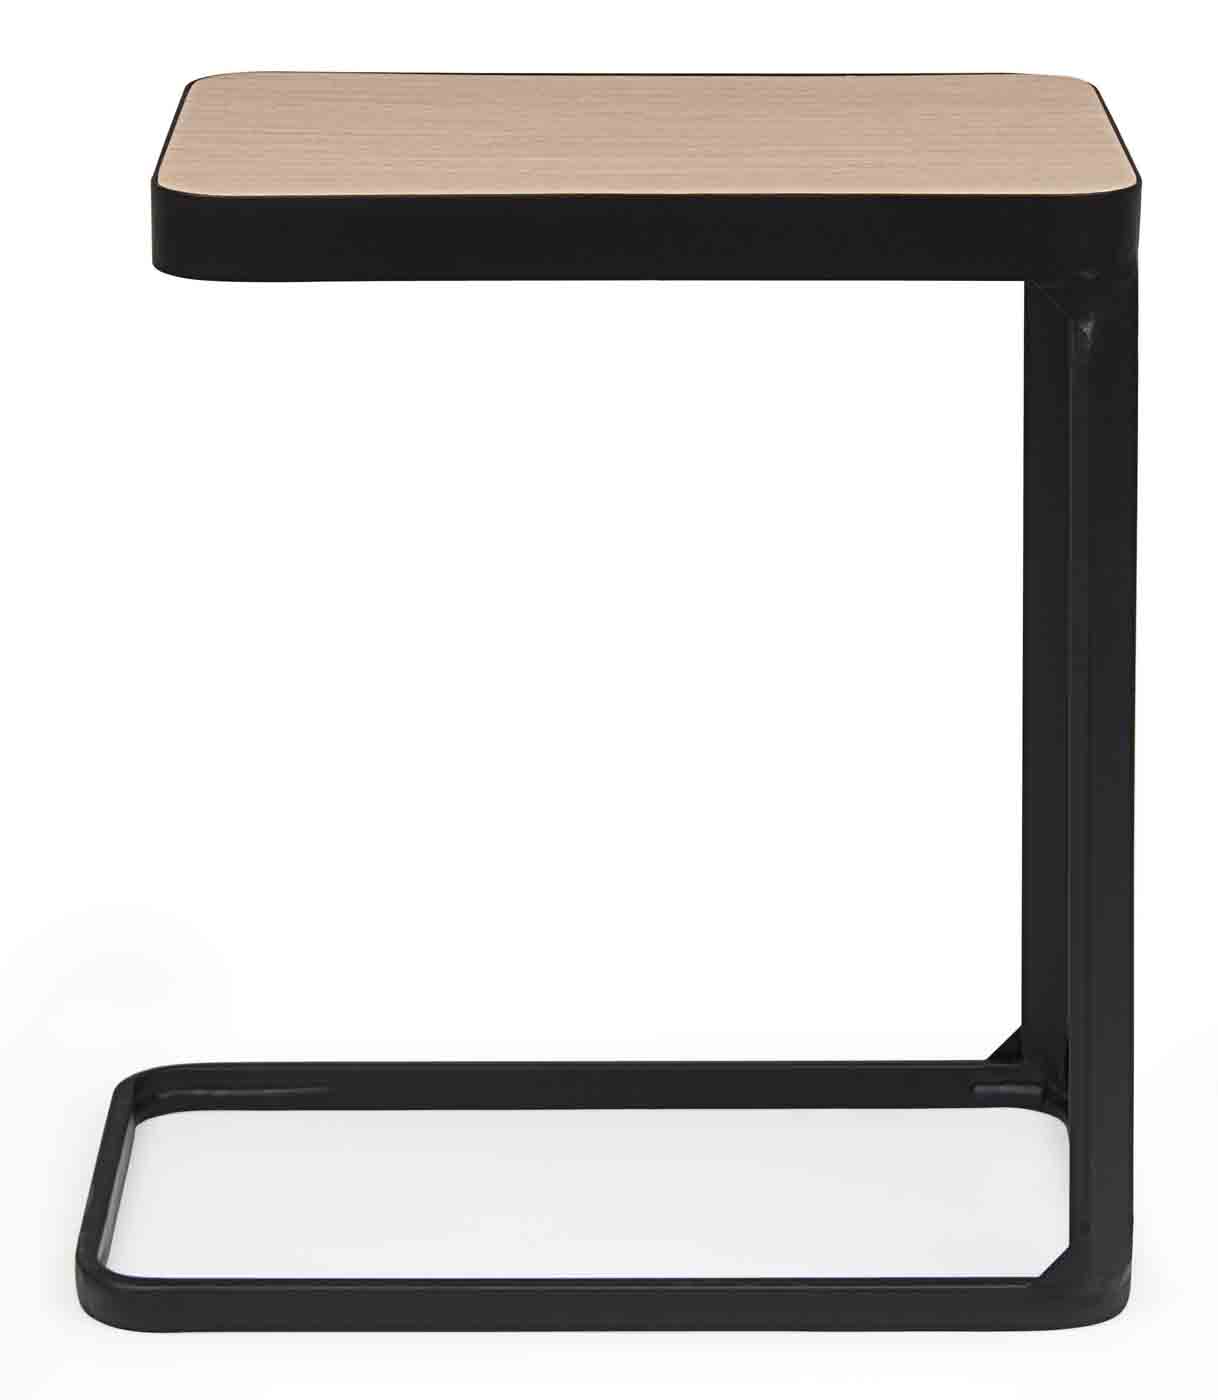 Die Tischplatte des Beistelltisches Everitt wurde aus Tannenholz gefertigt. Das Gestell des Tisches ist aus lackiertem Metall. Die Kombination von Holz und Metall erschafft ein modernes Design.